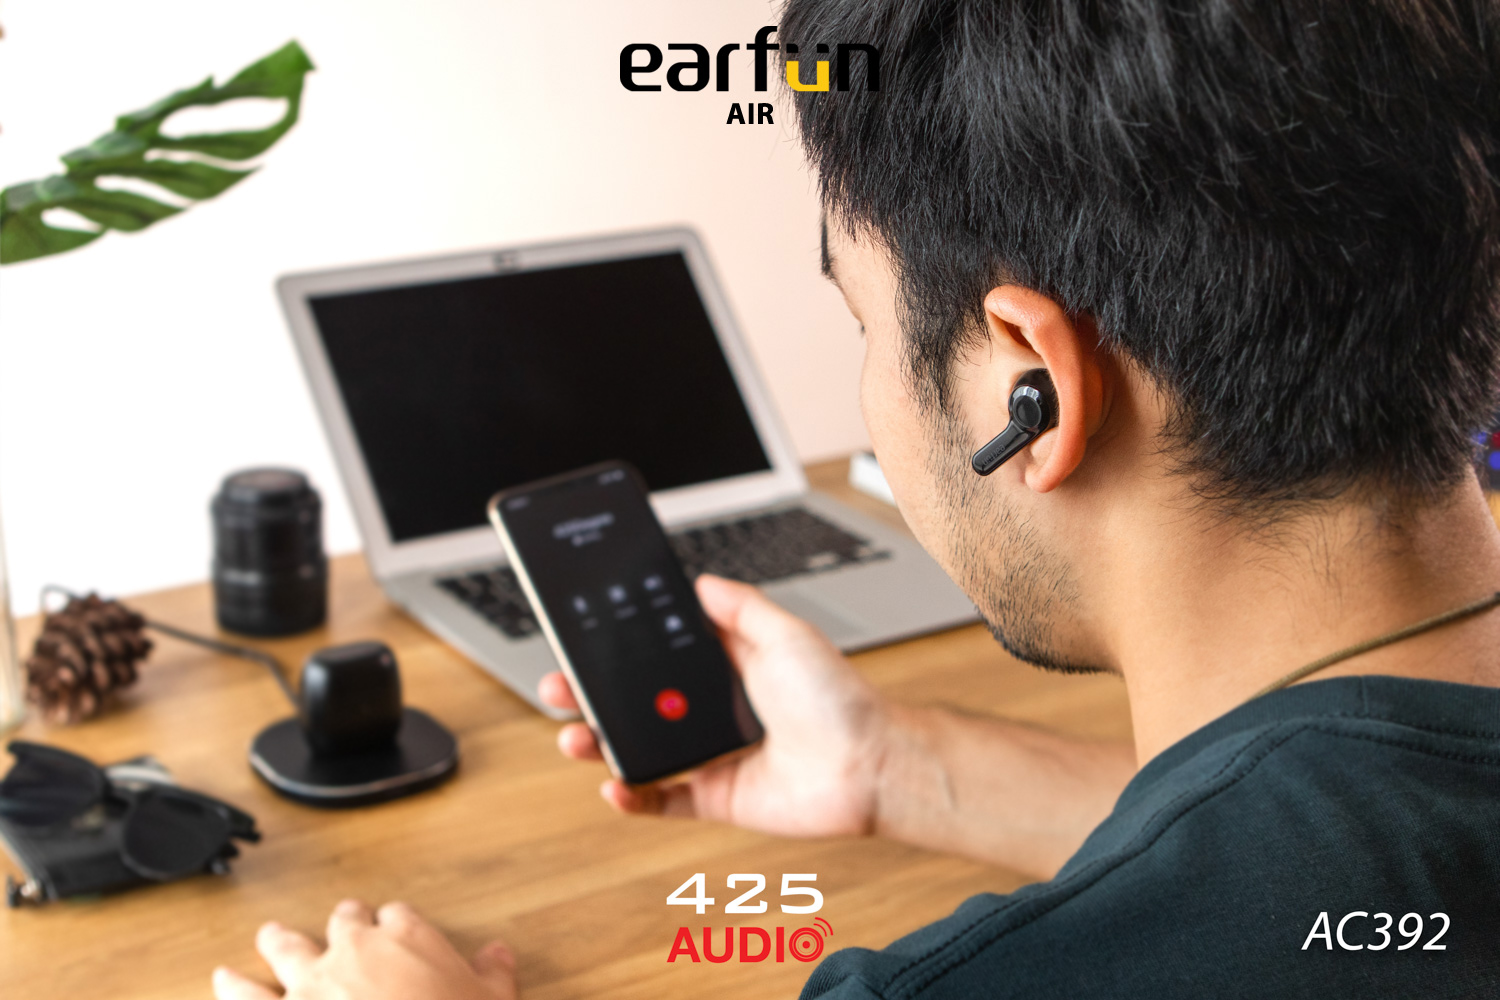 Earfun Air,earfun air,ipx7,หูฟังไร้สาย,หูฟังกันน้ำ,หูฟังออกกำลังกาย,exercise,earphone